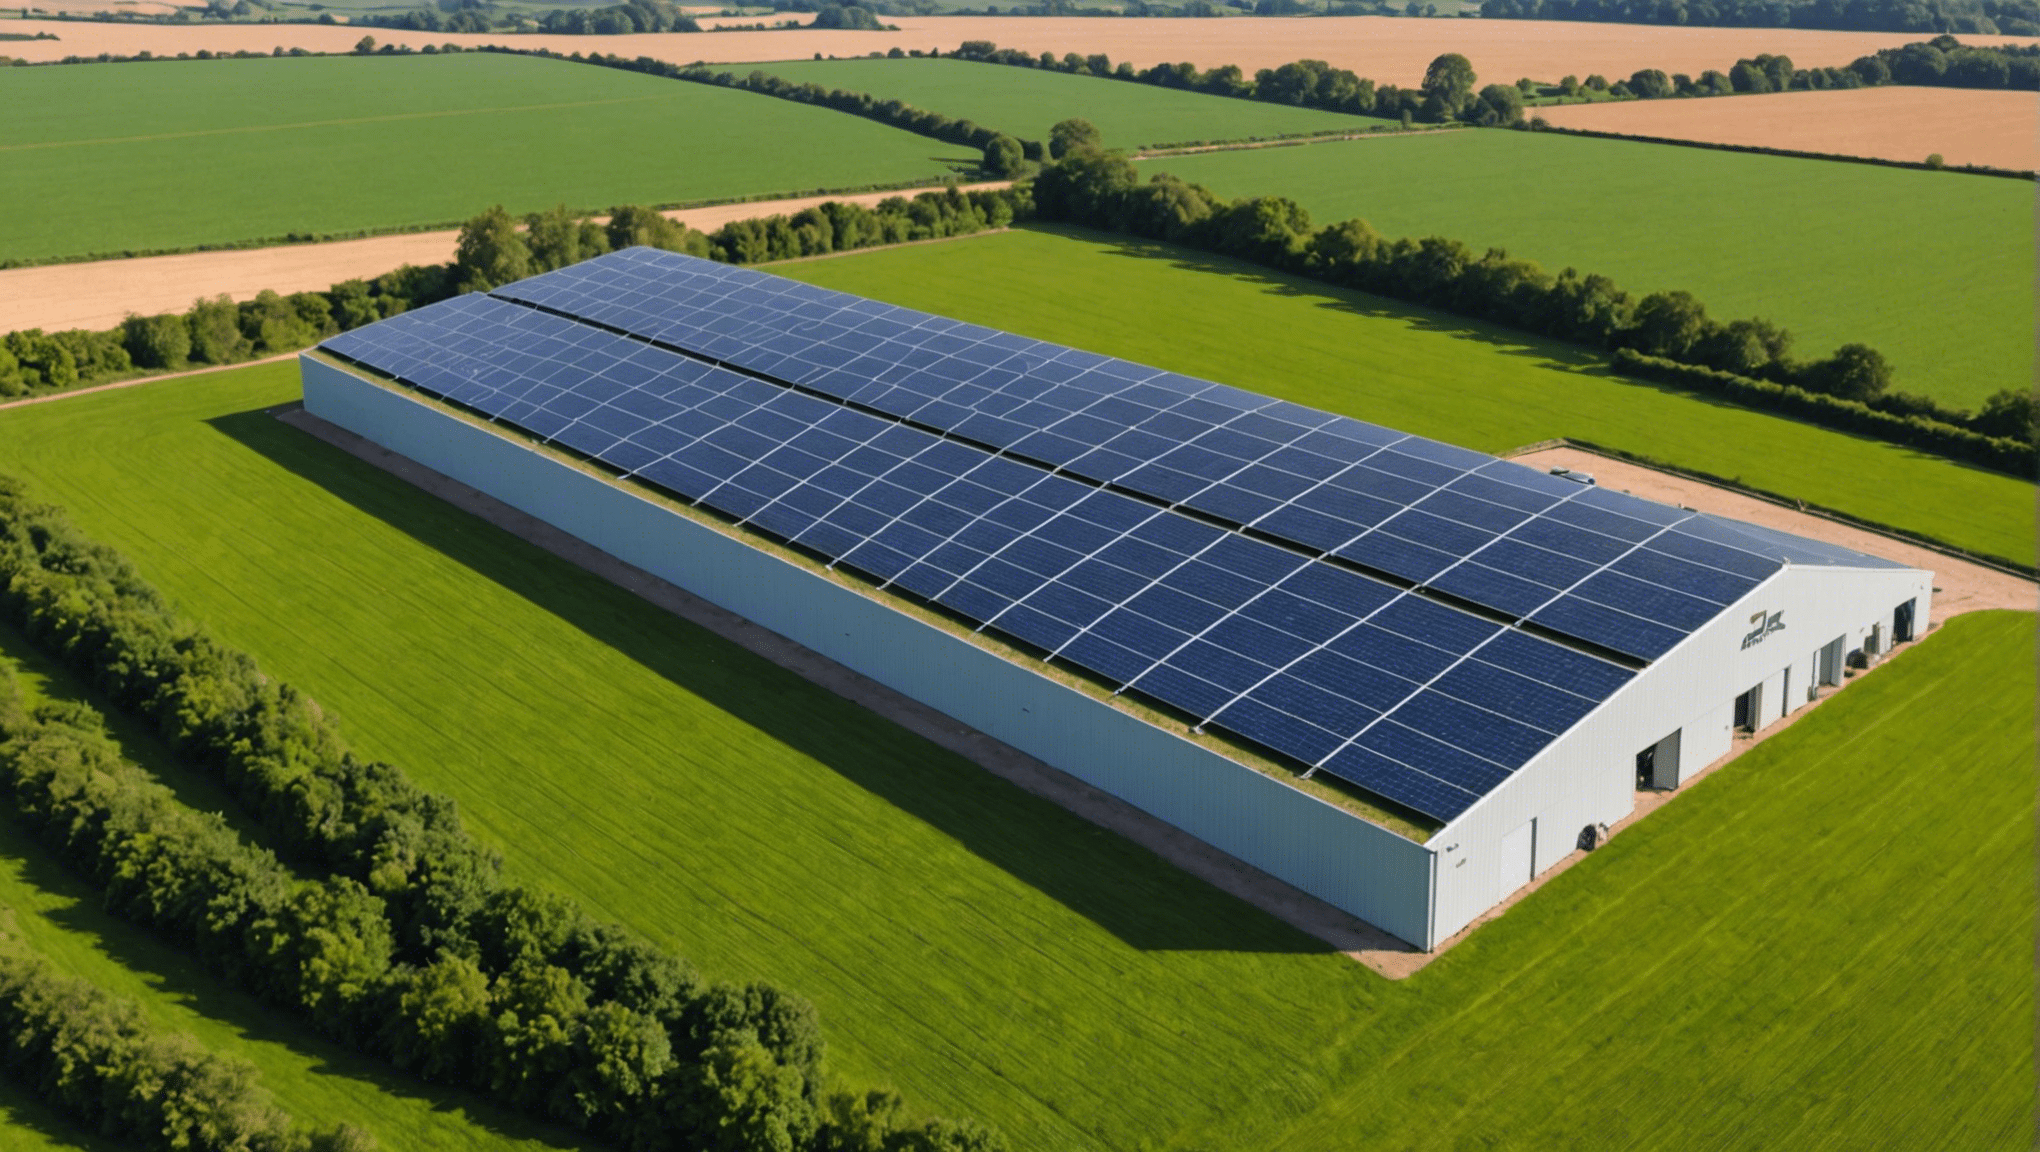 découvrez comment arkolia energies utilise l'énergie photovoltaïque pour l'agriculture dans ce guide sur les hangars agricoles.